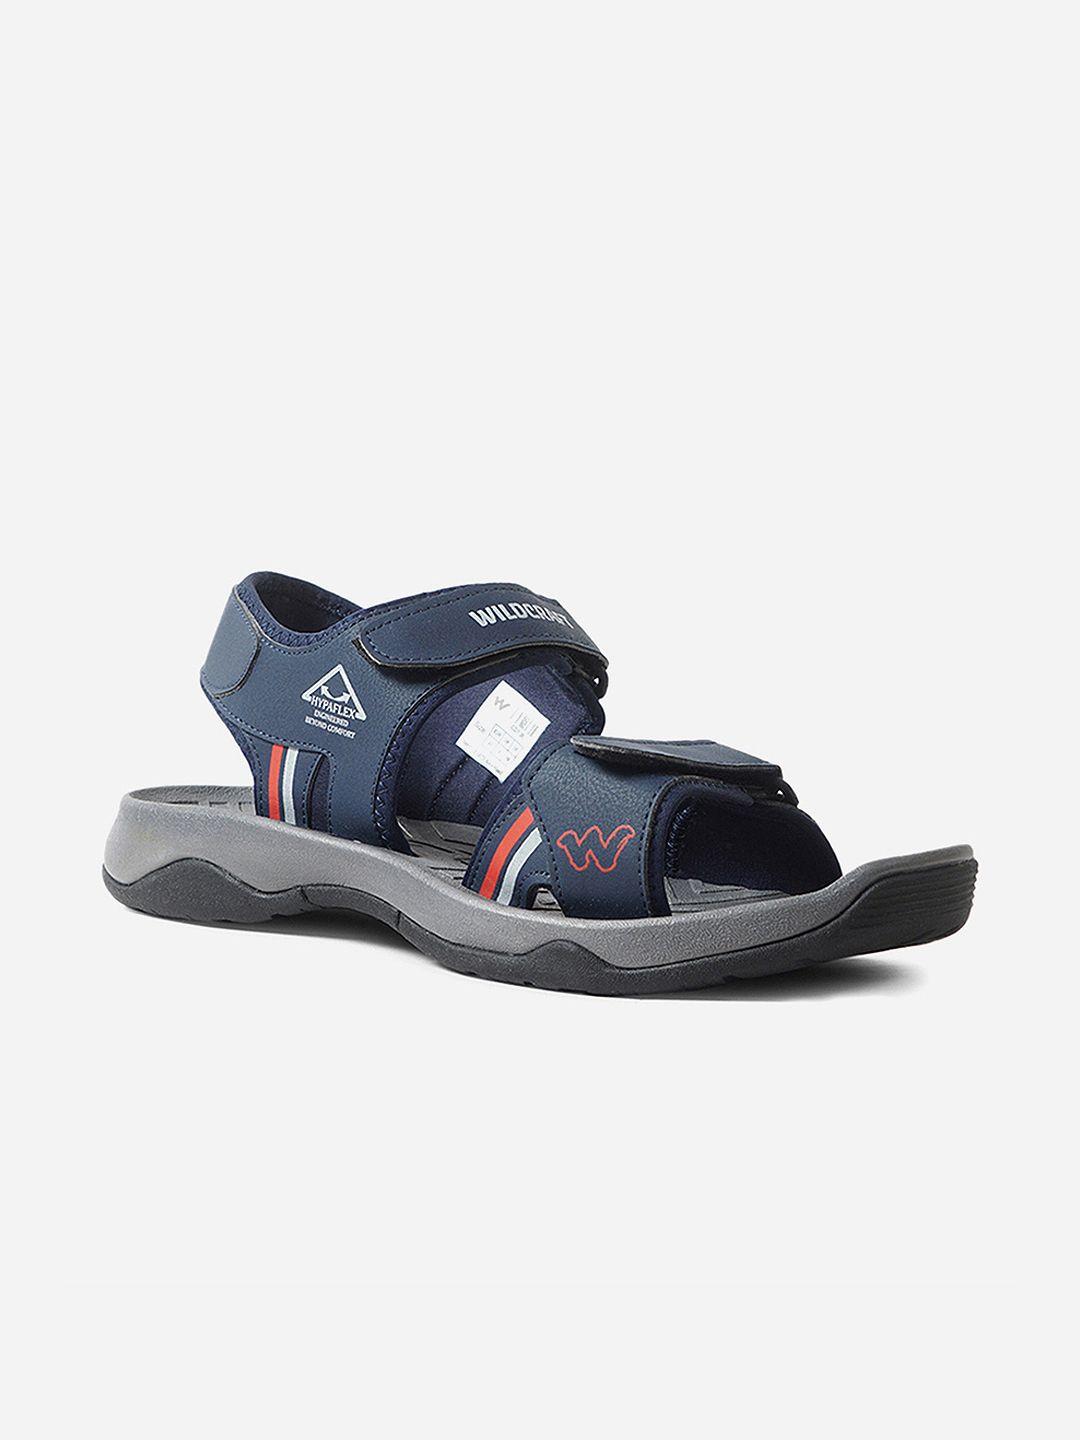 wildcraft-men-navy-blue-&-grey-hypaflex-engineered-restyle-sports-sandals